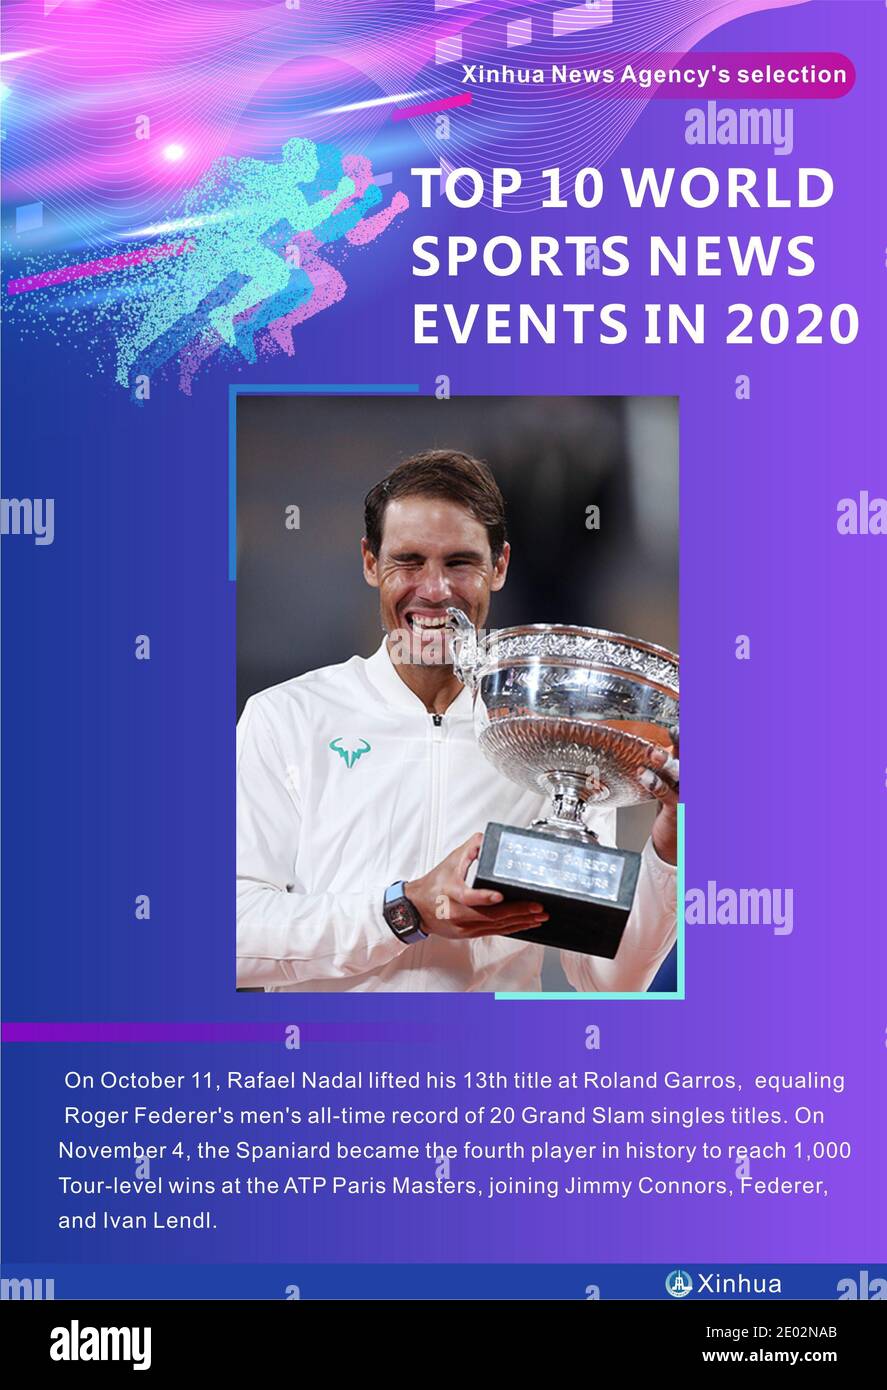 Peking, China. Dezember 2020. Am 11. Oktober hob Rafael Nadal seinen 13. Titel bei Roland Garros an, was Roger Federers Allzeitrekord von 20 Grand Slam-Einzeltiteln bei den Männern entspricht. Am 4. November wurde der Spanier der vierte Spieler in der Geschichte, der 1,000 Tour-Level-Siege bei den ATP Paris Masters erreichte, zusammen mit Jimmy Connors, Federer und Ivan Lendl. Quelle: Xu Xiaoxuan/Xinhua/Alamy Live News Stockfoto